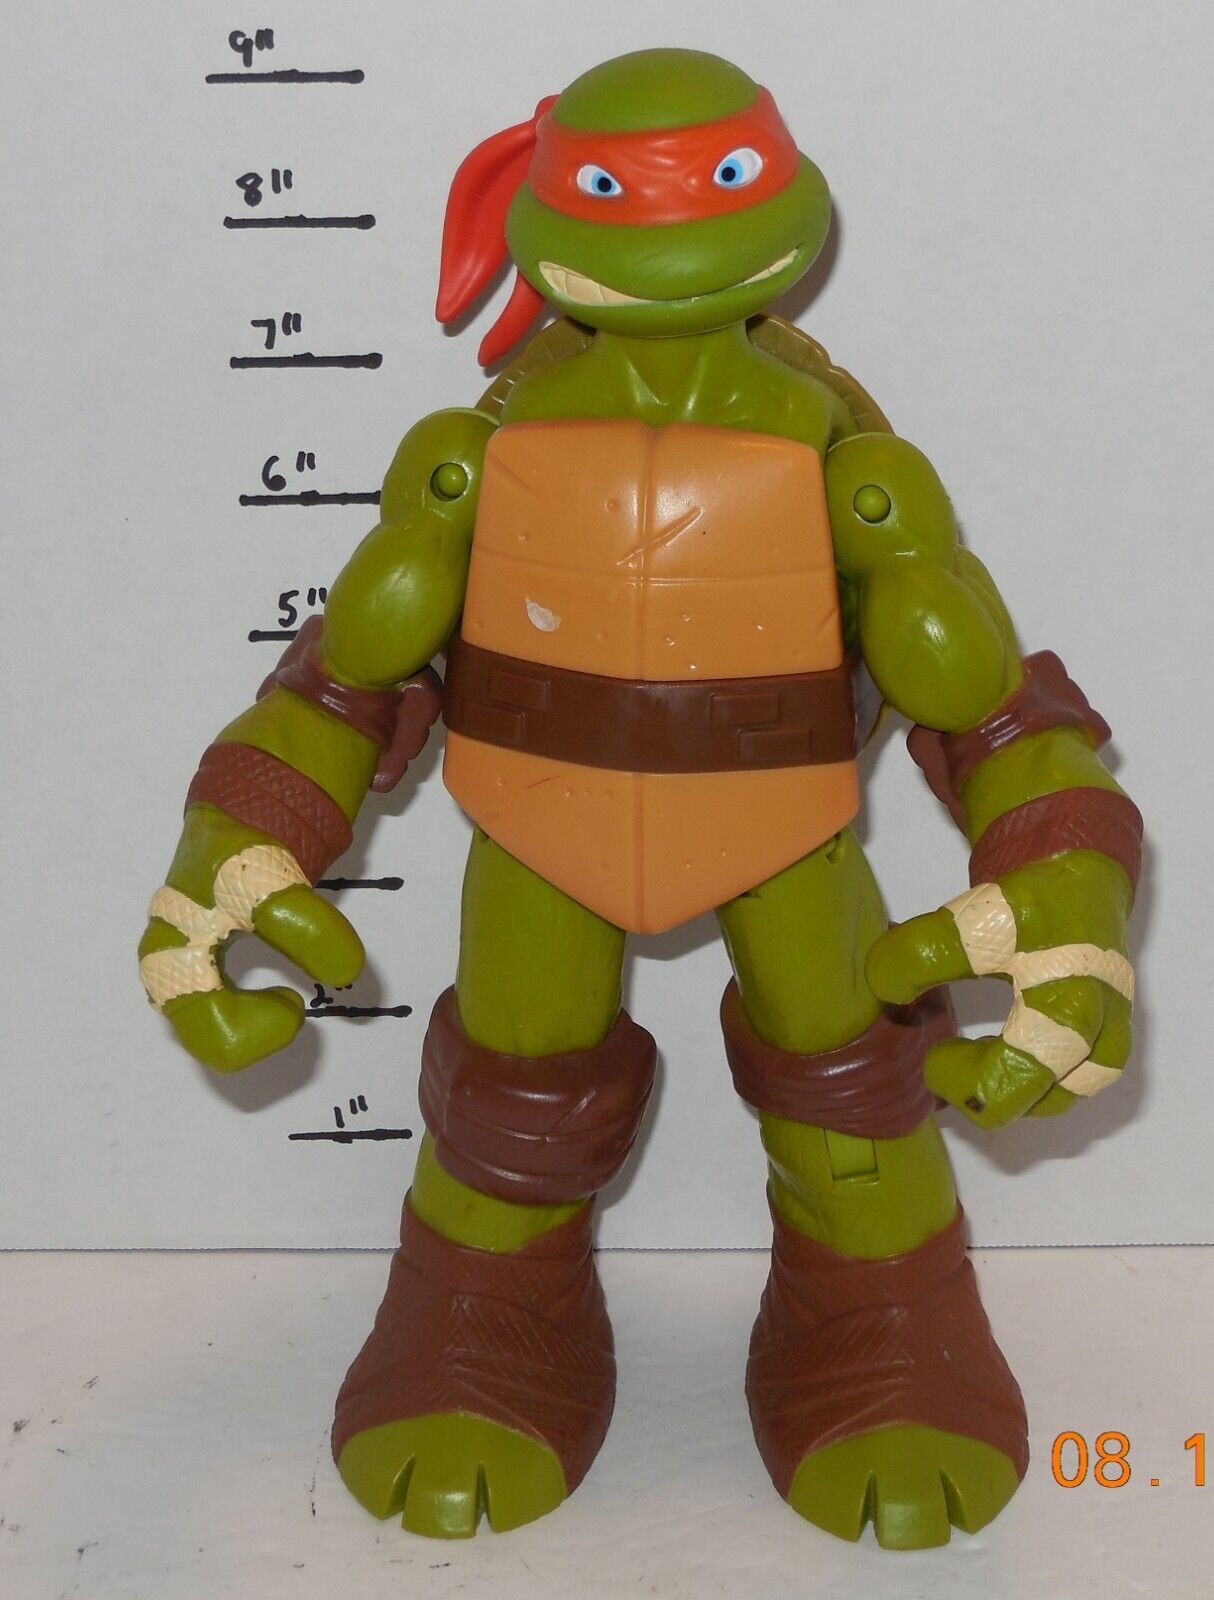 2012 Playmates Teenage Mutant Ninja Turtles Michelangelo / Mikey 9" TMNT Figure - $14.43